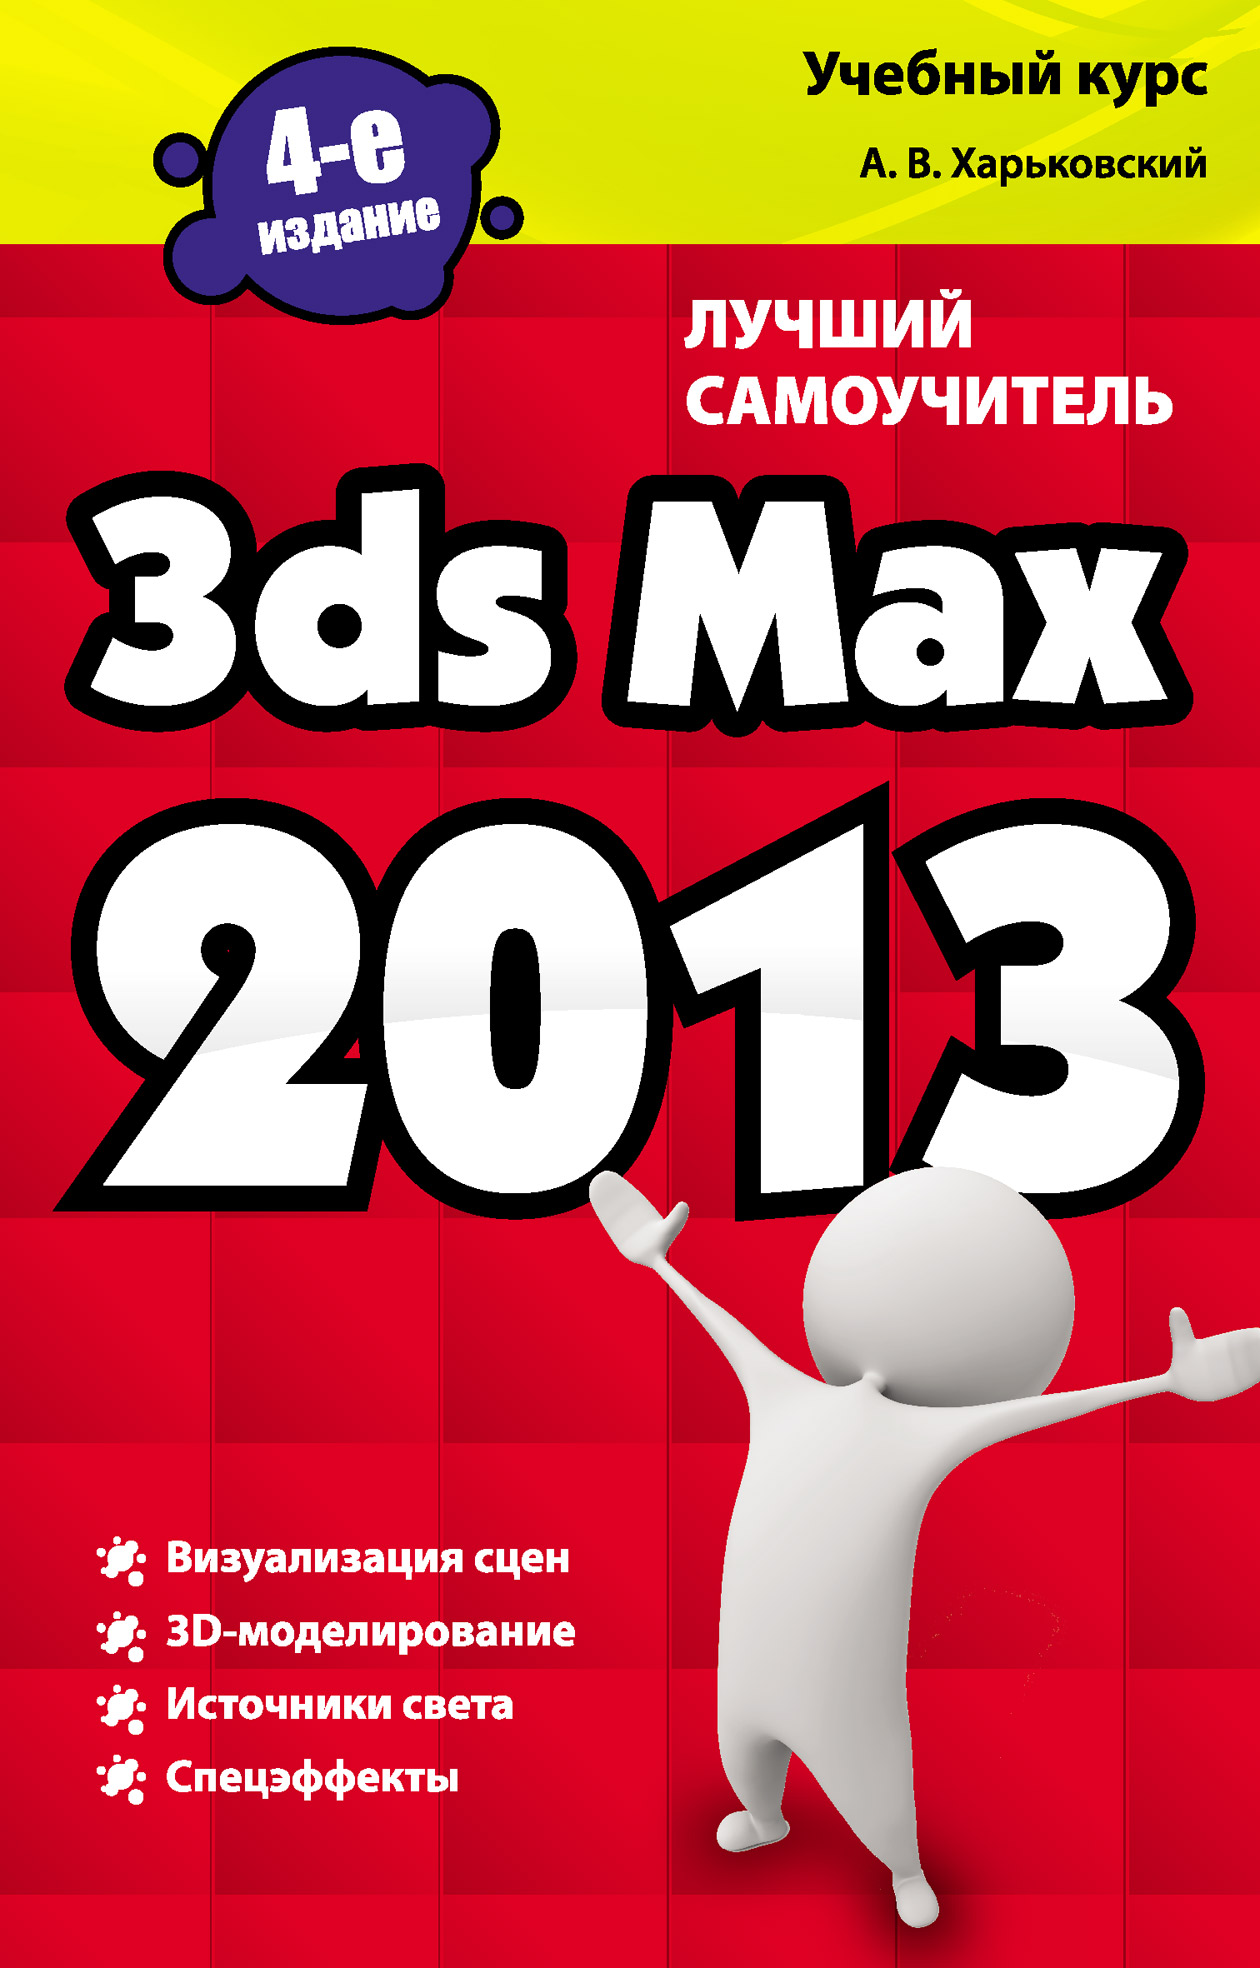 3ds Max 2013.Лучший самоучитель